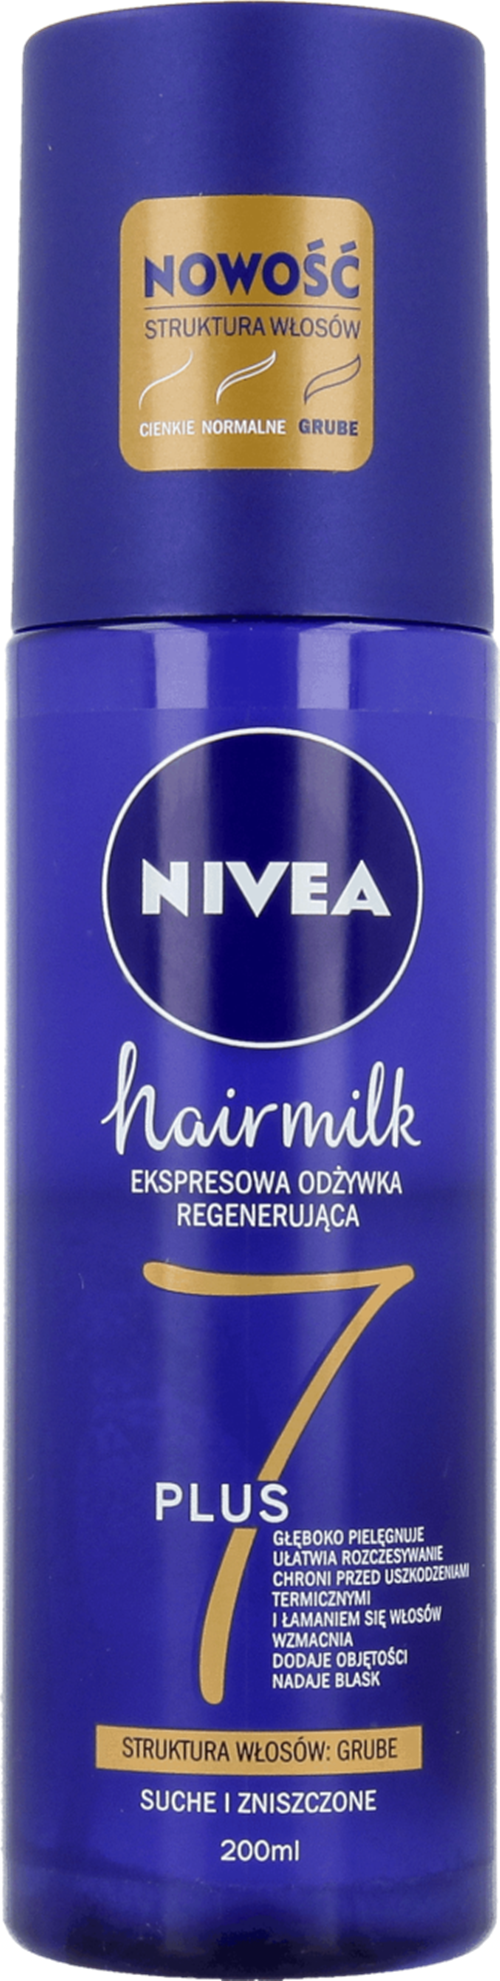 hairmilk ekspresowa regenerująca odżywka do włosów o strukturze cienkiej